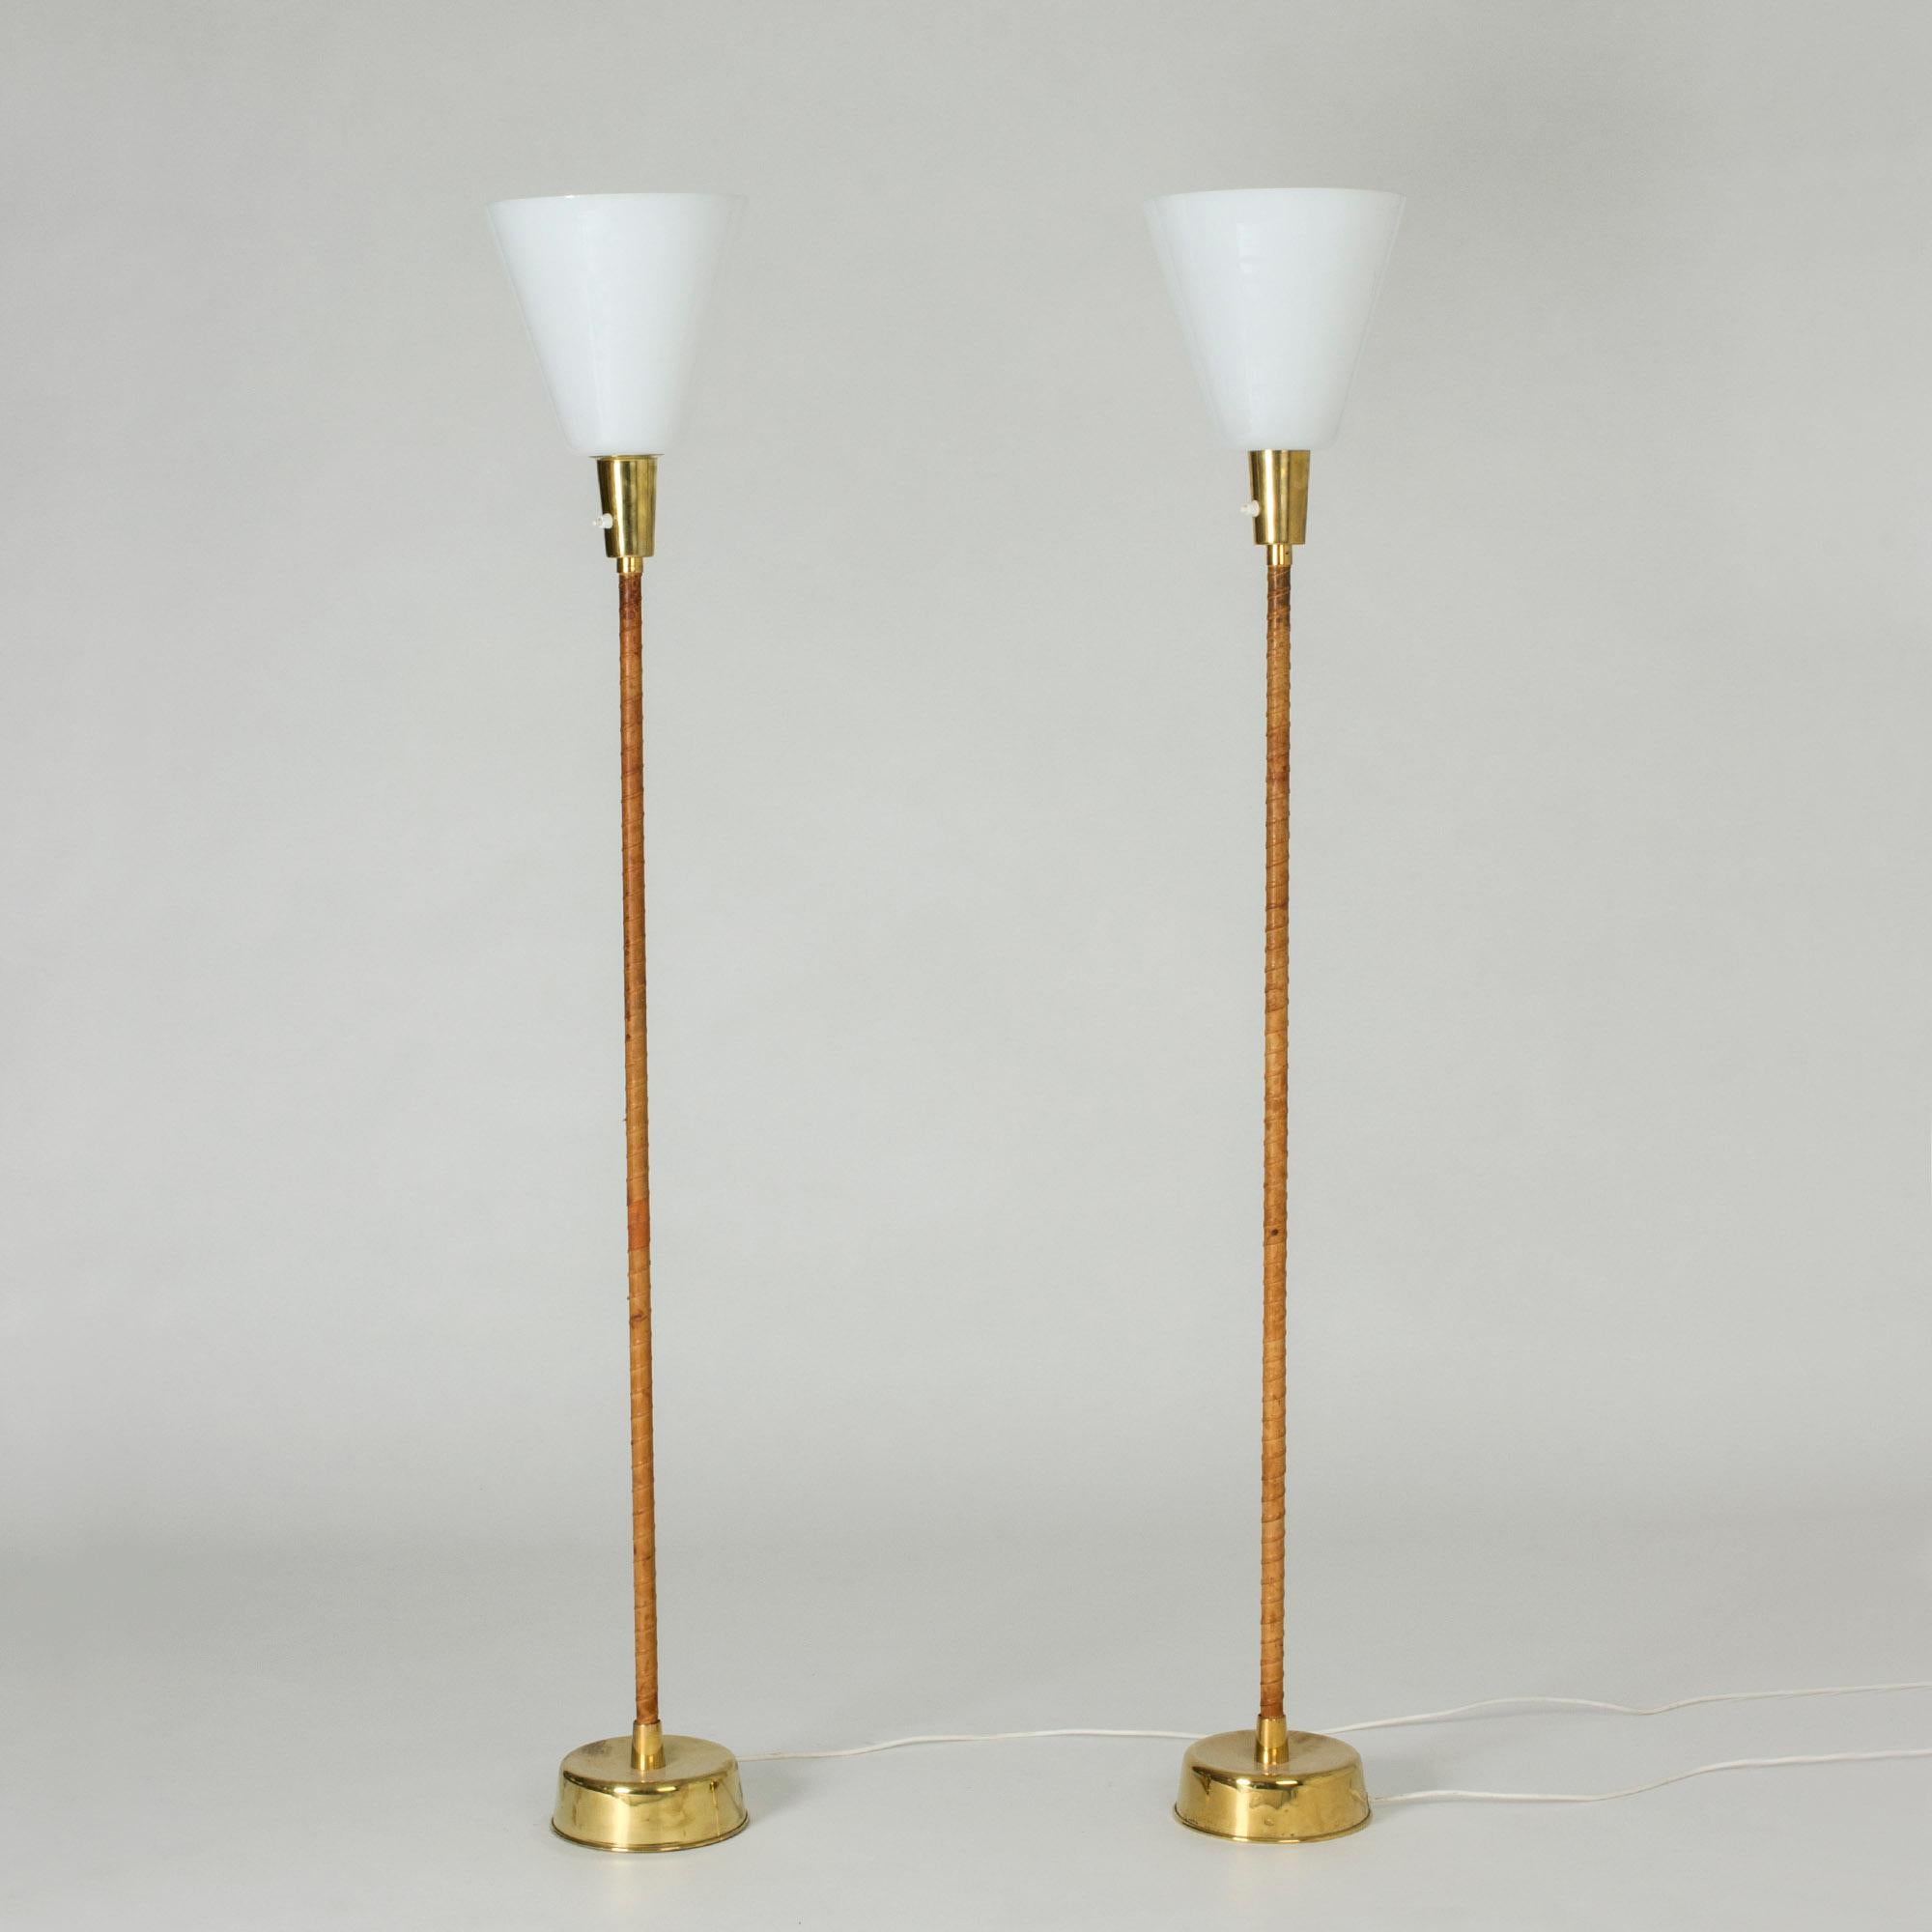 Paire de lampadaires par Lisa Johansson-Pape, frappant par leur simplicité tranquille. Bases en laiton et poignées enroulées en cuir brun, abat-jour blancs volumineux. Les abat-jour peuvent facilement être enlevés pour transformer les lampes en